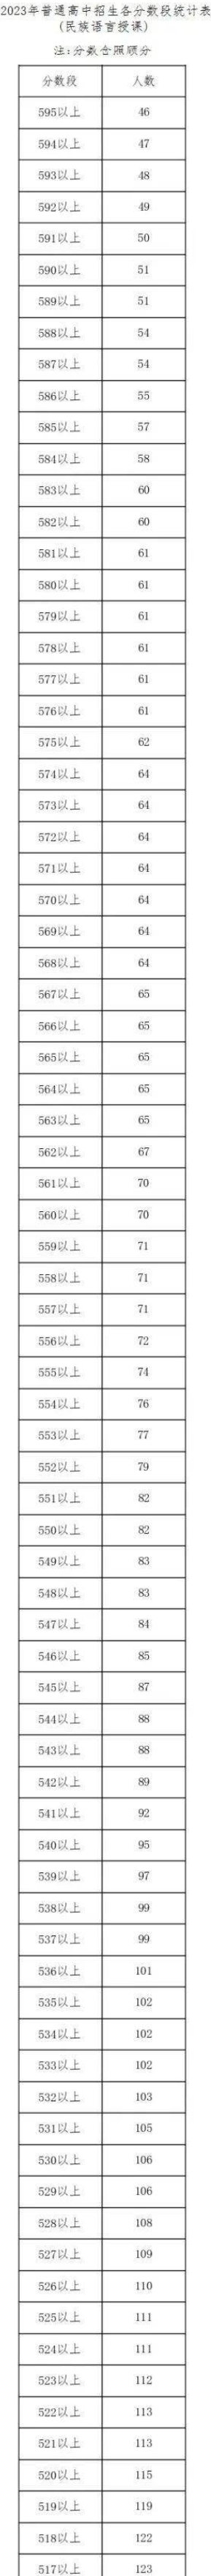 2023呼和浩特中考一分一段表 最新成绩排名